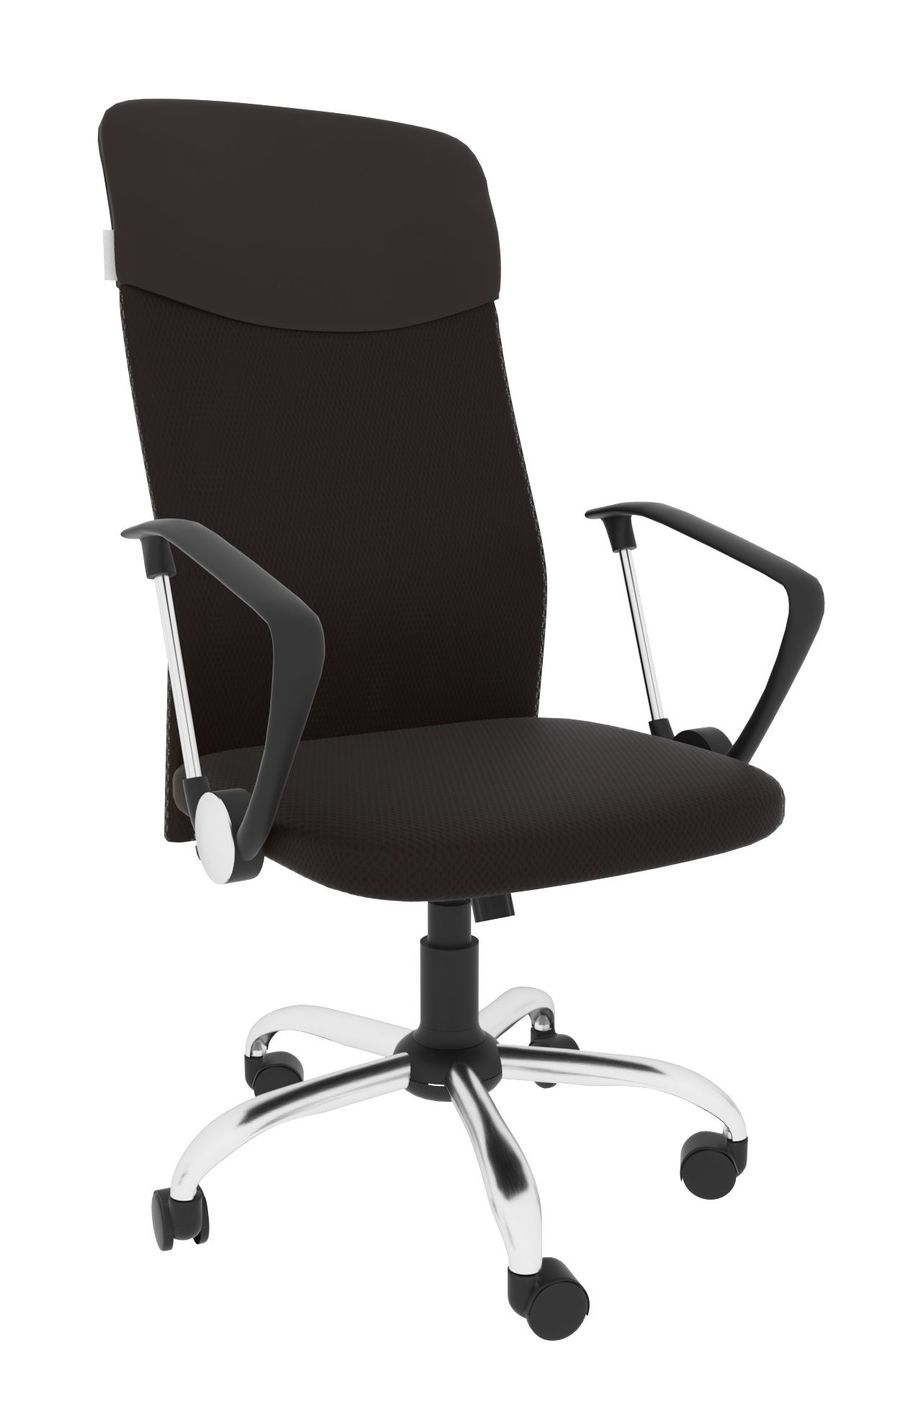 фото Офисное кресло экспресс офис 17 array leo a топ рс900 хром ткань сетка коричневая